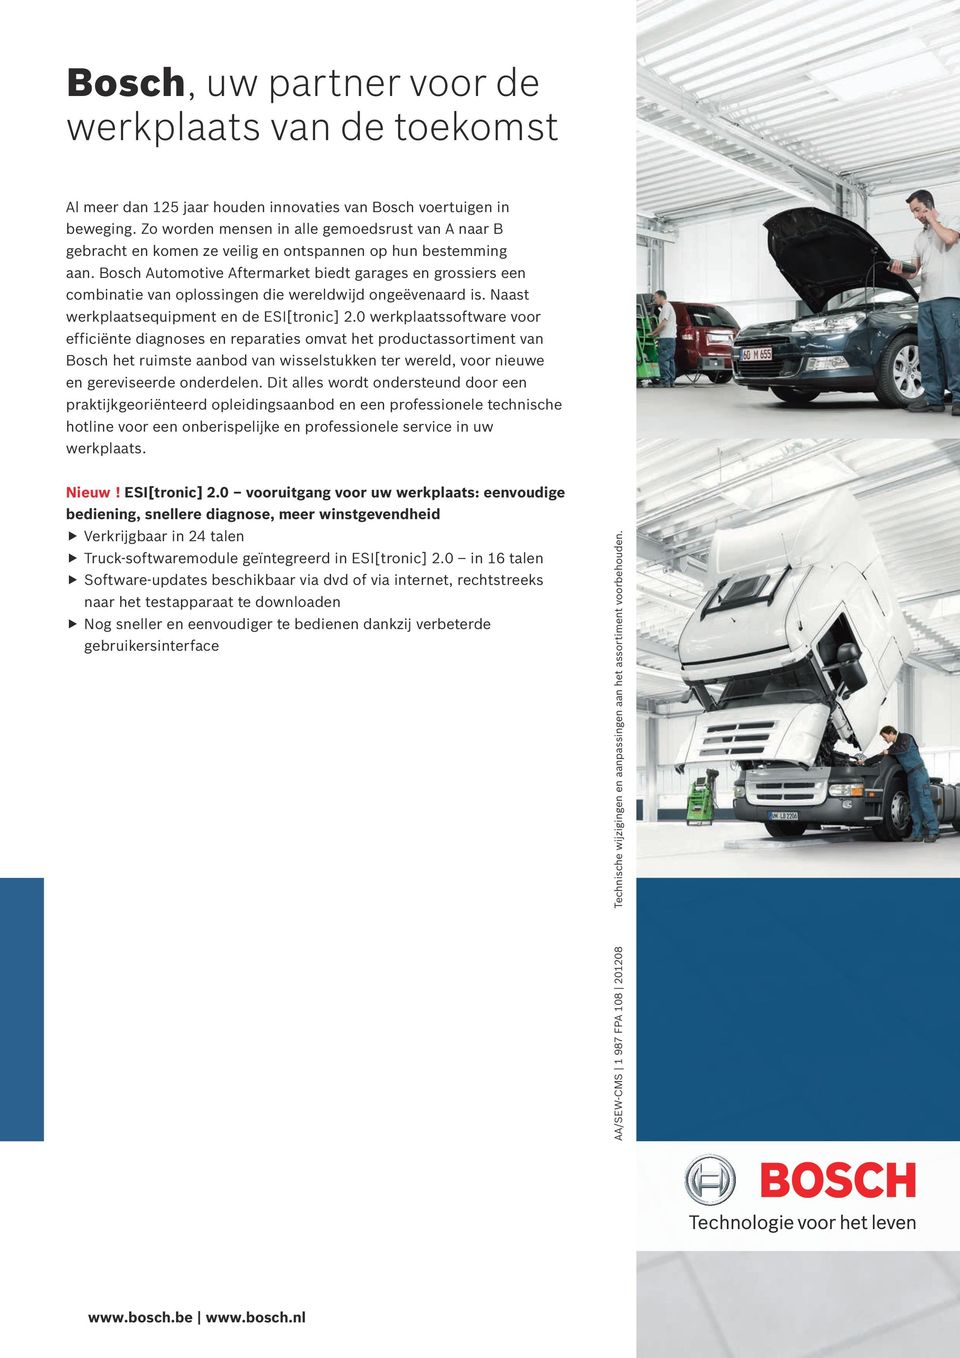 Bosch Automotive Aftermarket biedt garages en grossiers een combinatie van oplossingen die wereldwijd ongeëvenaard is. Naast werkplaatsequipment en de ESI[tronic] 2.